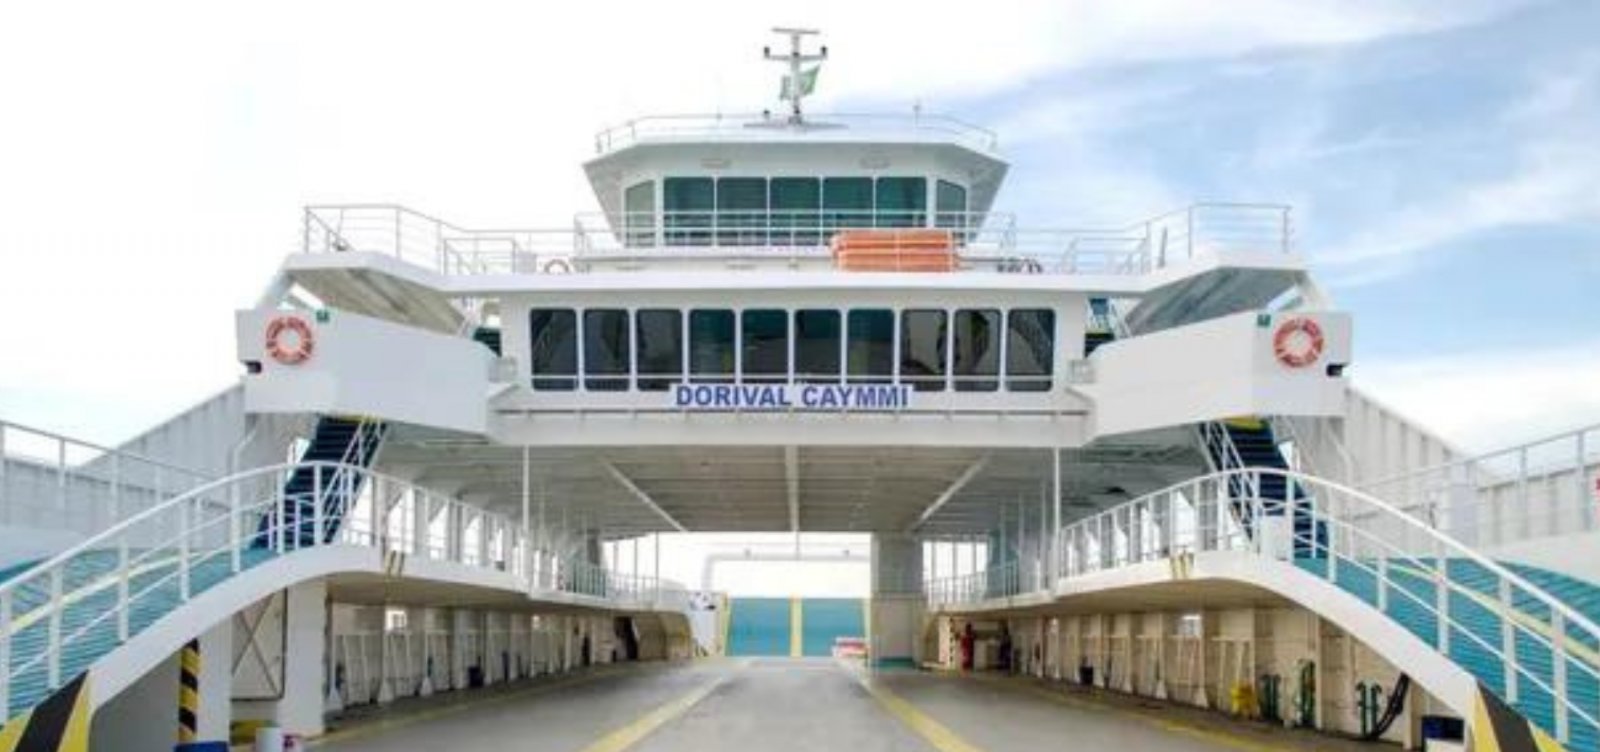 Sistema ferry-boat é notificado durante fiscalização em Salvador por falta de limpeza e acessibilidade